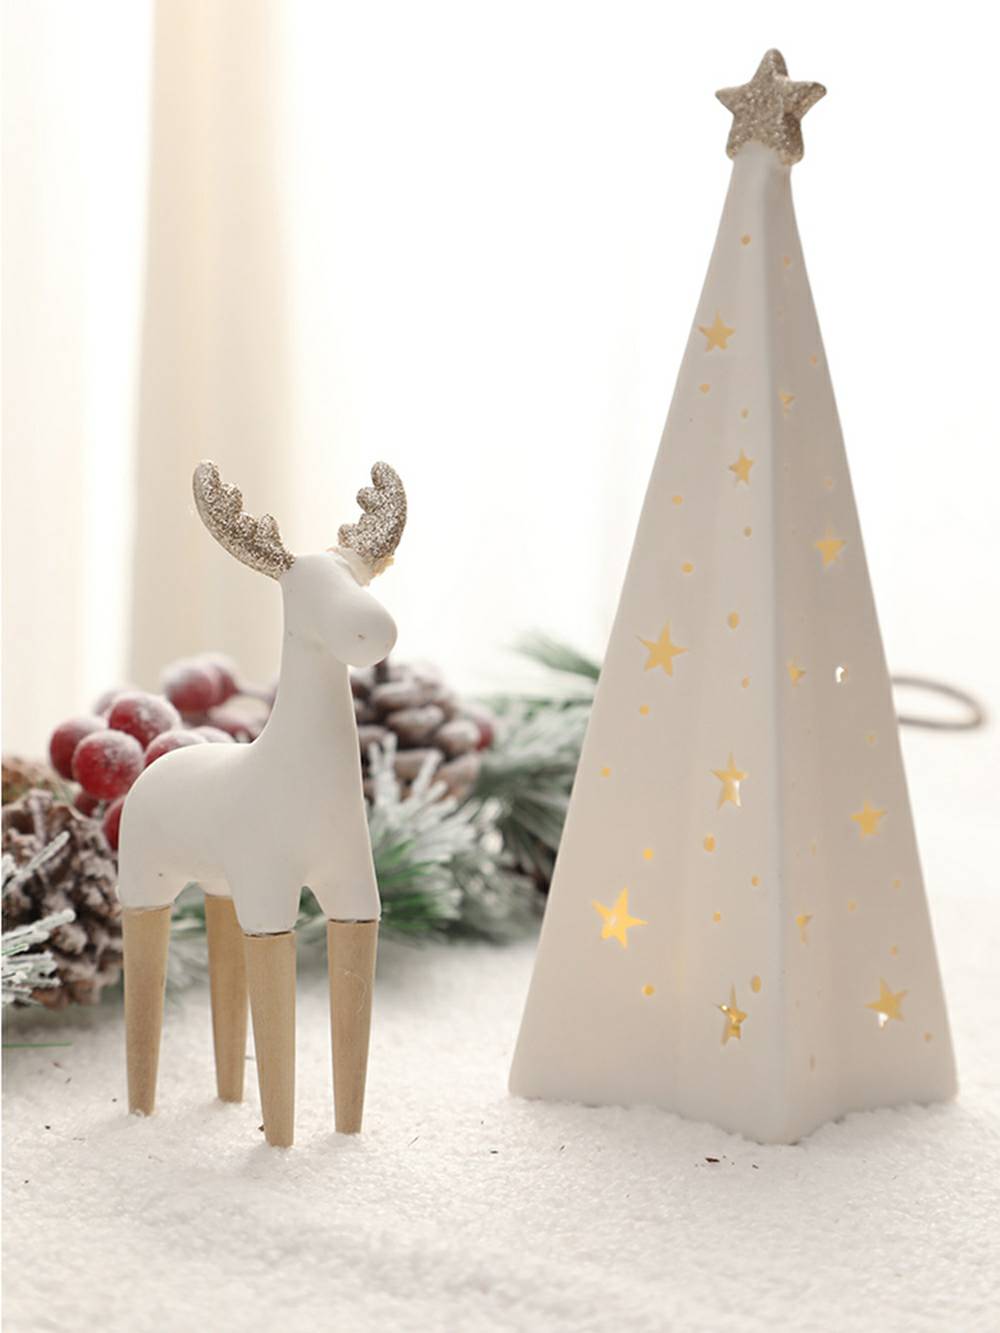 Decoración navideña iluminada de reno y muñeco de nieve de cerámica